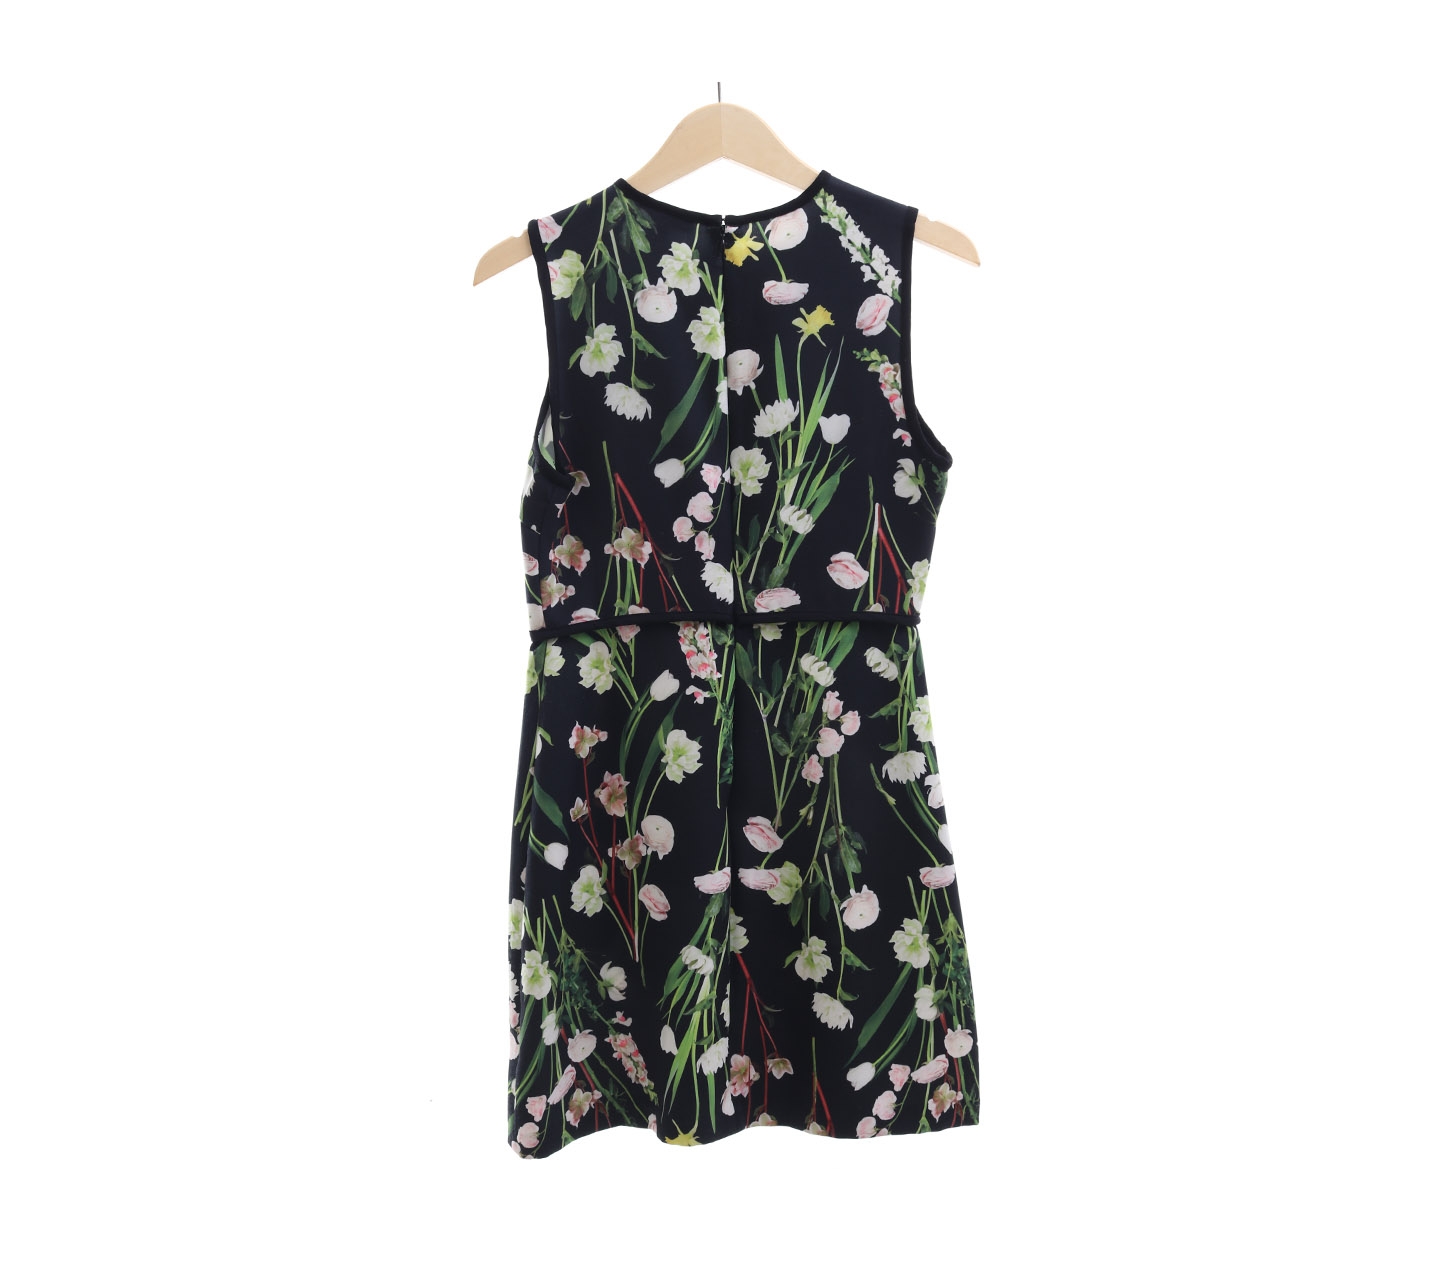 Victoria Beckham For Target Black Floral Mini Dress